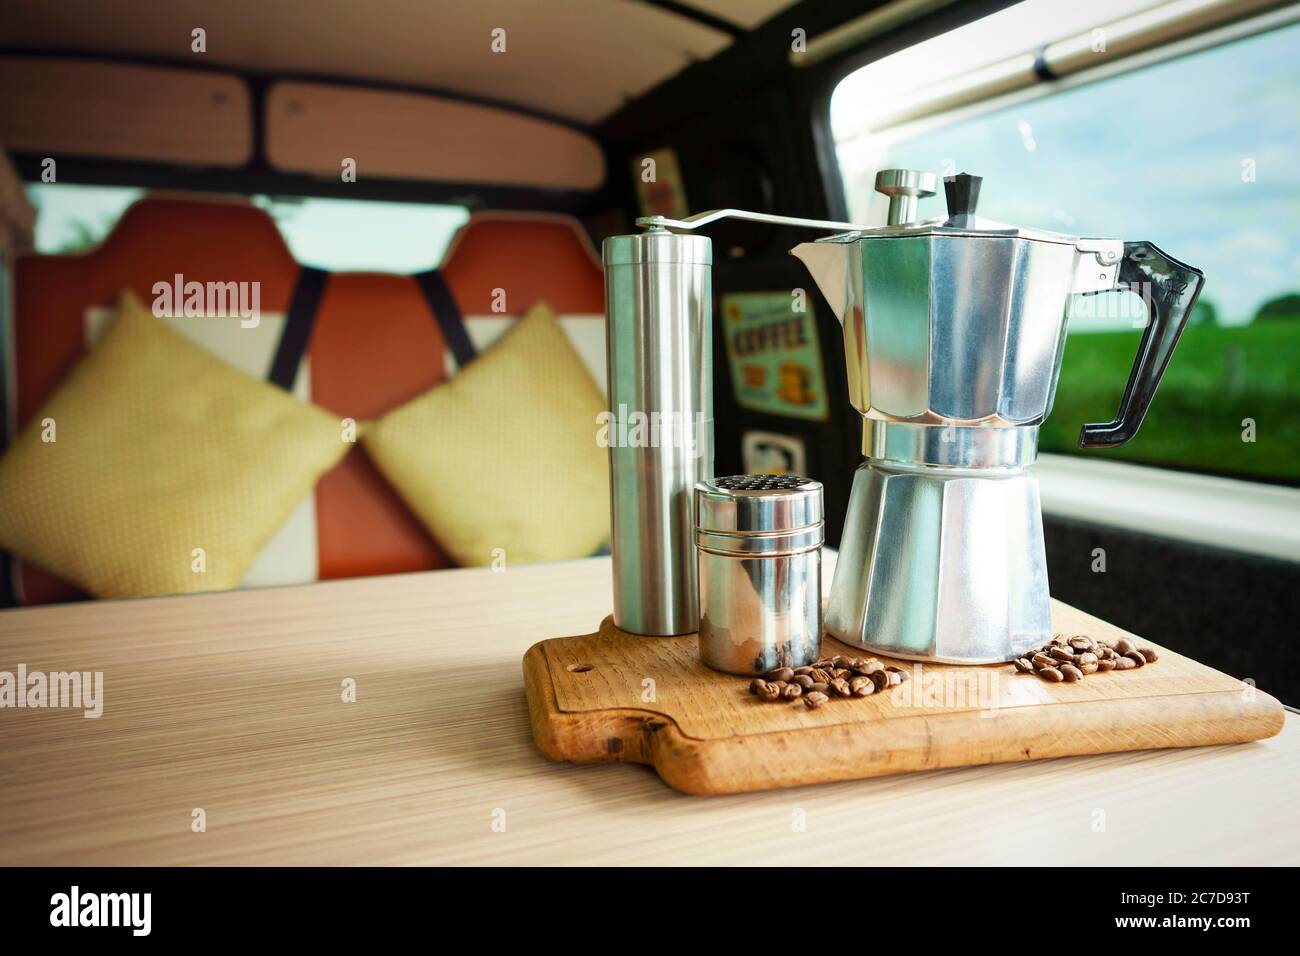 Aqua Bialetti cafetera de topetón, molinillo de café, agitador de chocolate  y granos de café, a punto de preparar café en una bandeja de madera en una  cómoda furgoneta Fotografía de stock -